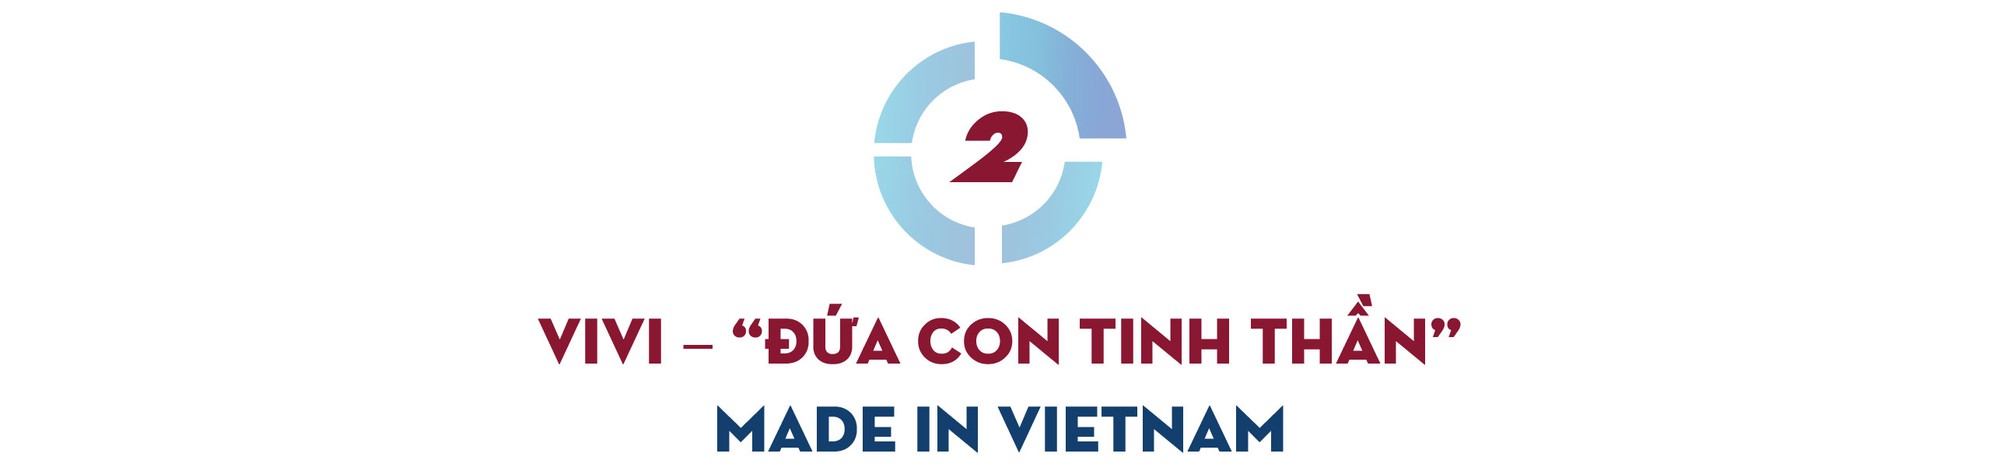 Người nắm giữ “trái tim” của trợ lý ảo ViVi trên xe VinFast: sản phẩm Việt phục vụ người Việt và ước mơ về một “Google Việt Nam” trong lĩnh vực AI - Ảnh 3.